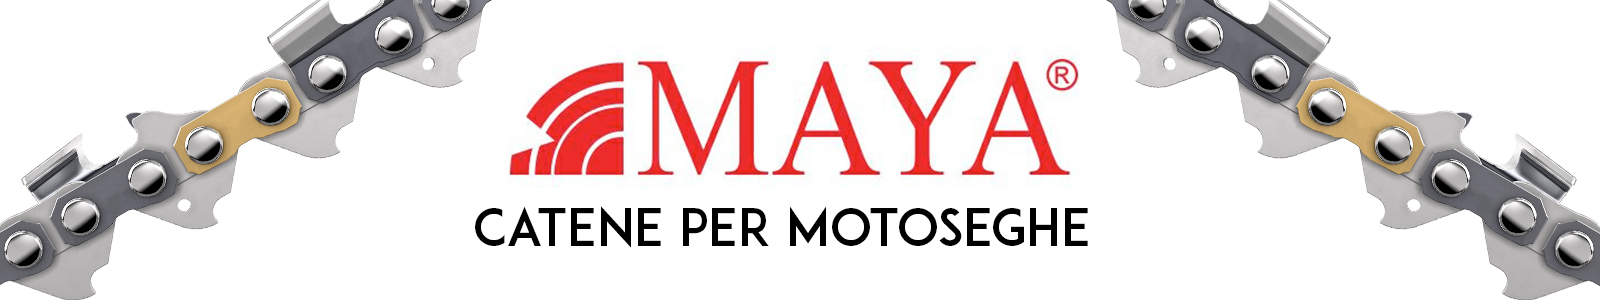 logo catene maya